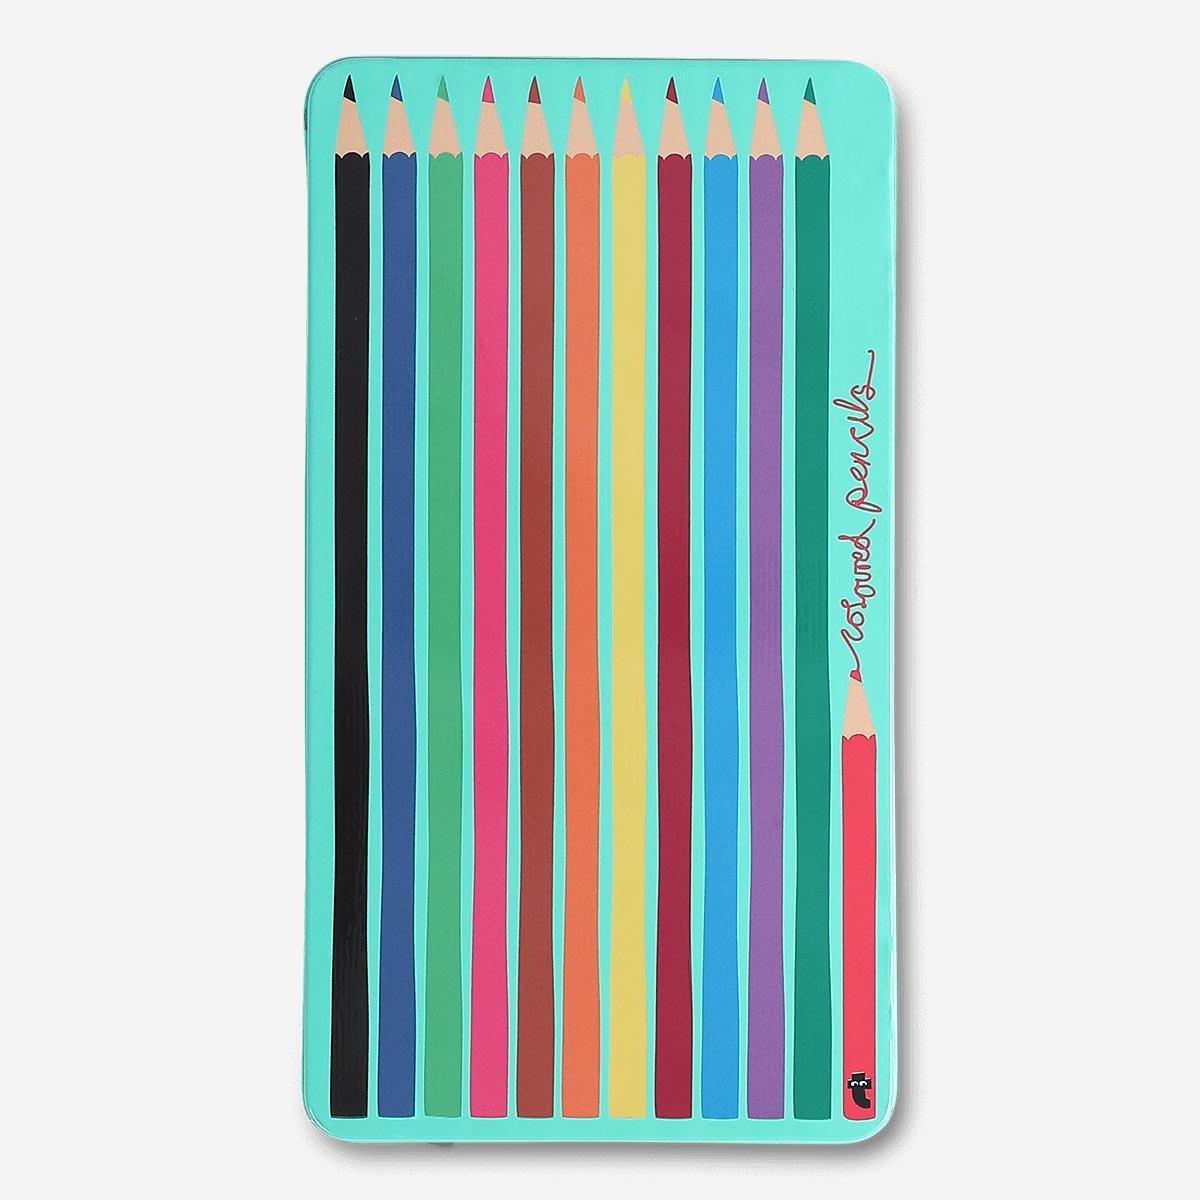 Multicolour Colour pencils. 12pcs